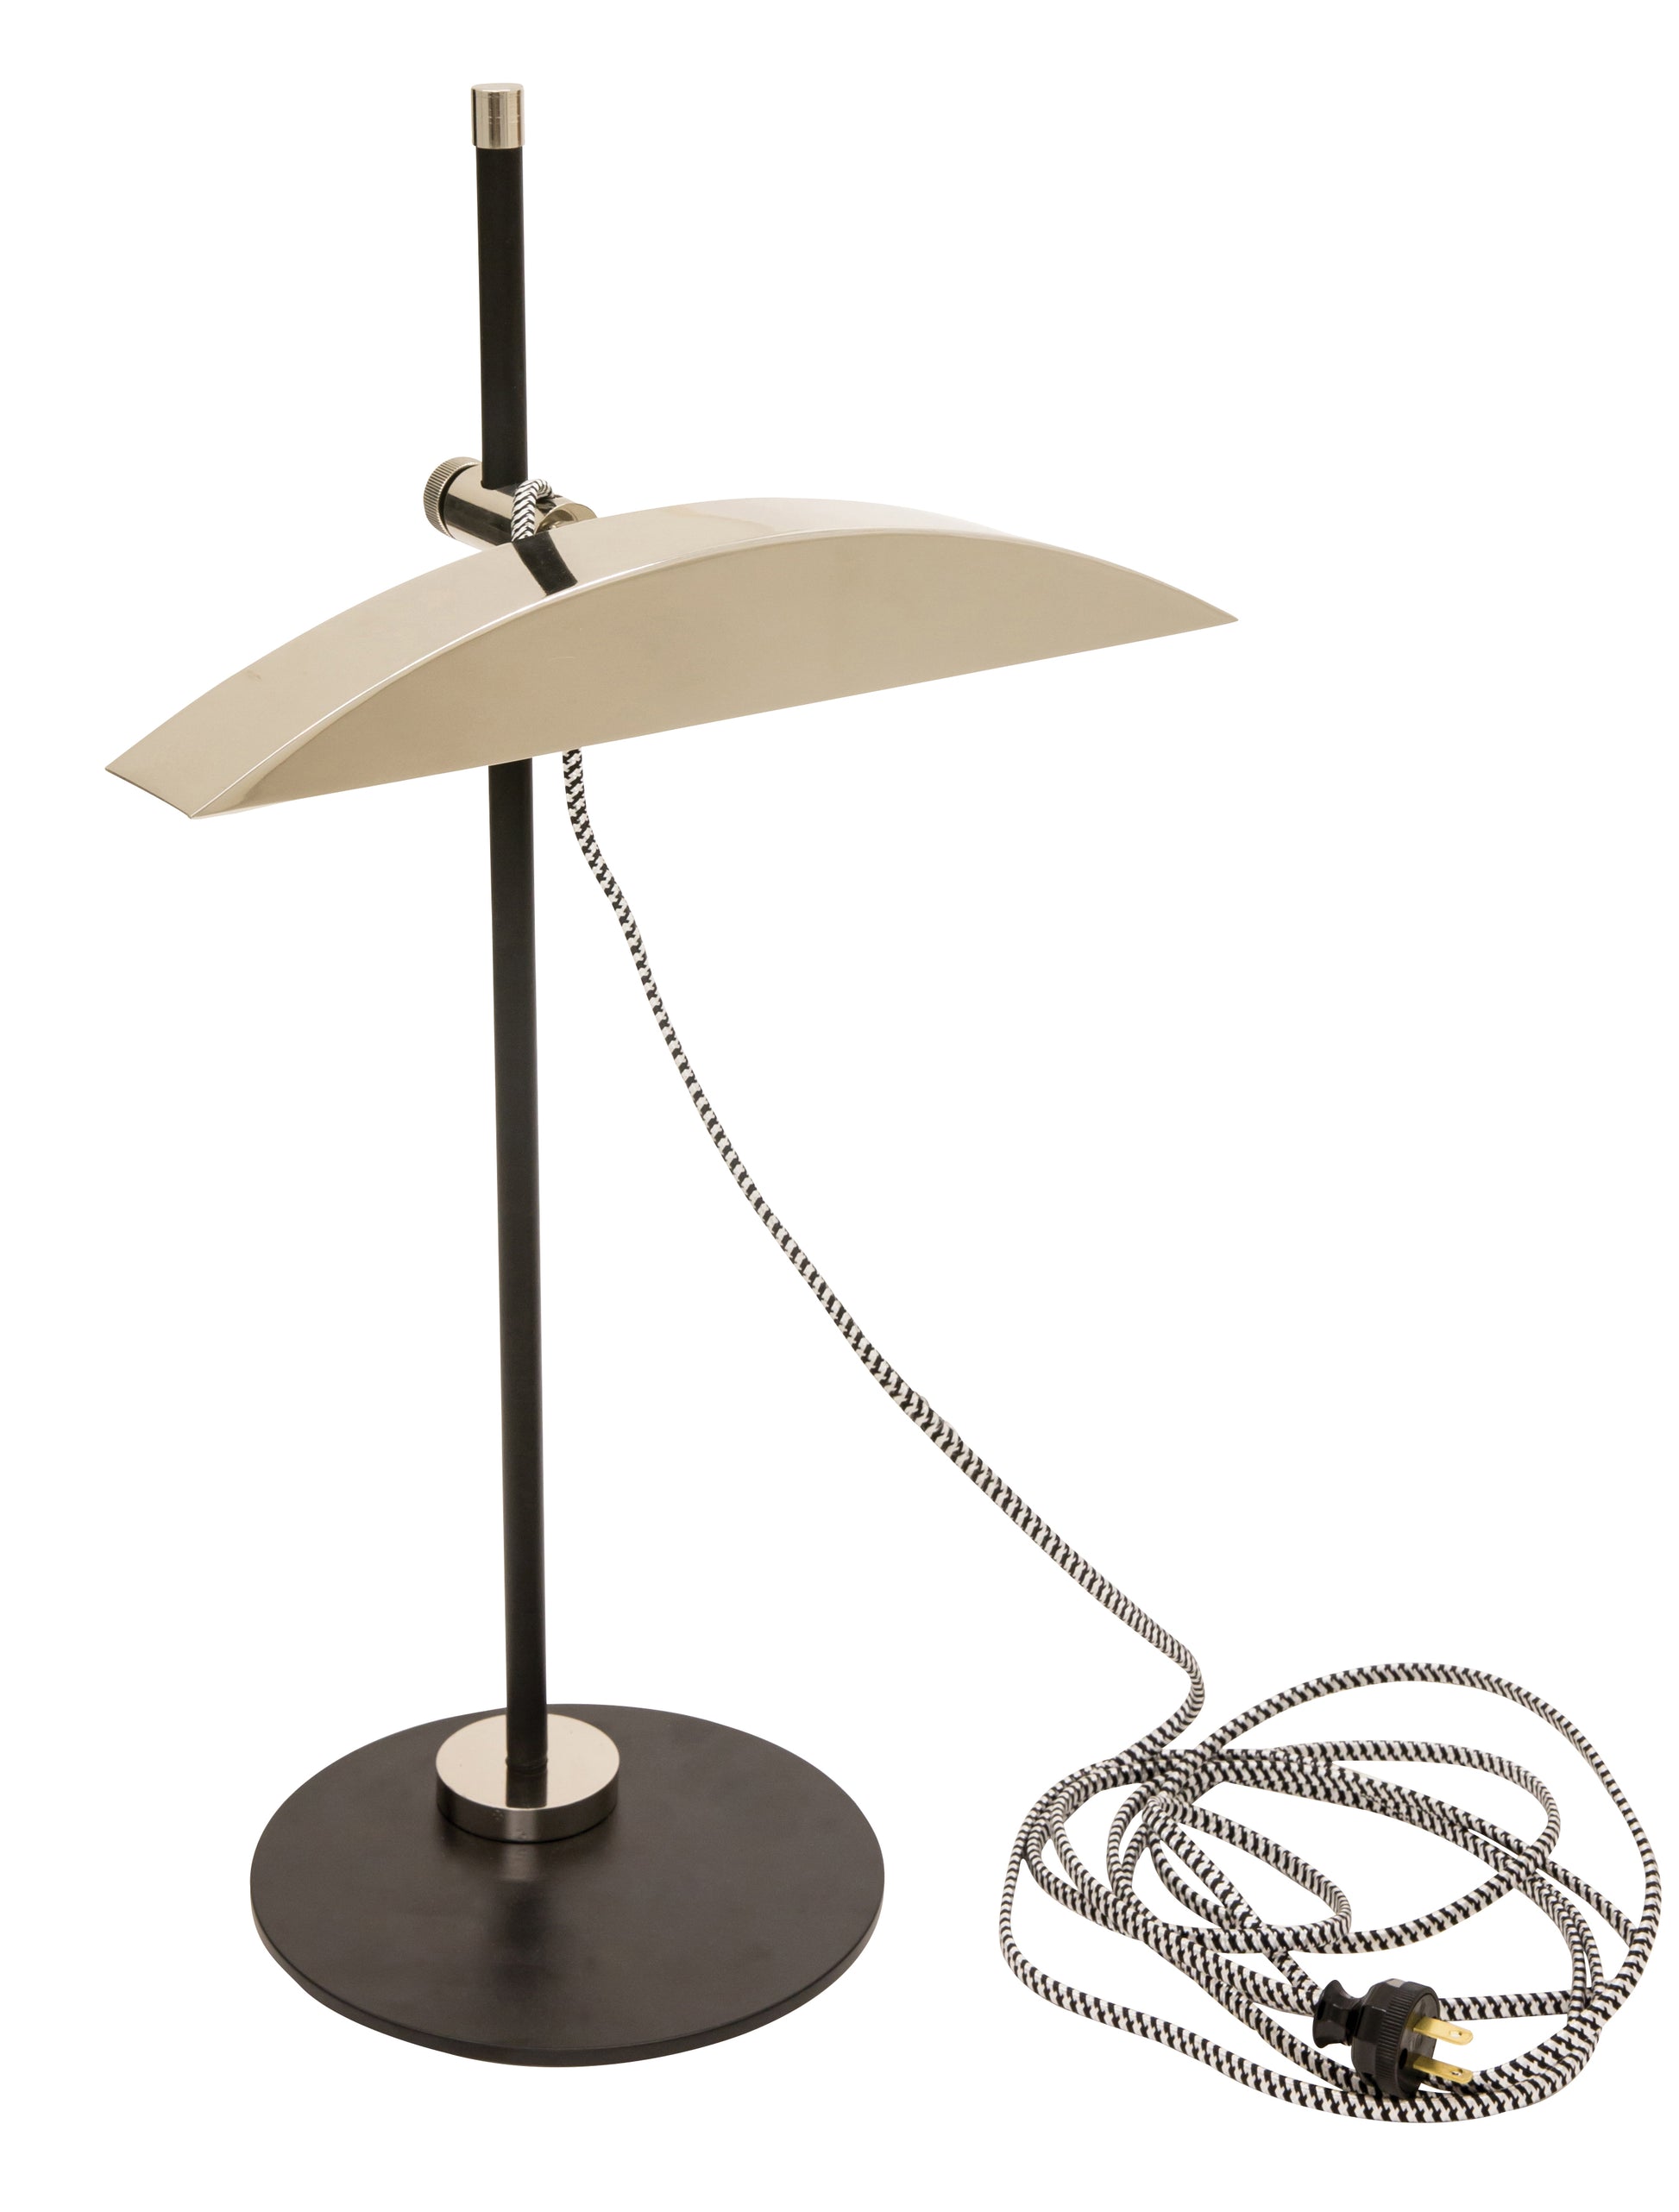 House of Troy Adjustable LED Desk Lamp in Matte Black with Polished Nickel Accents DSK500-BLKPN